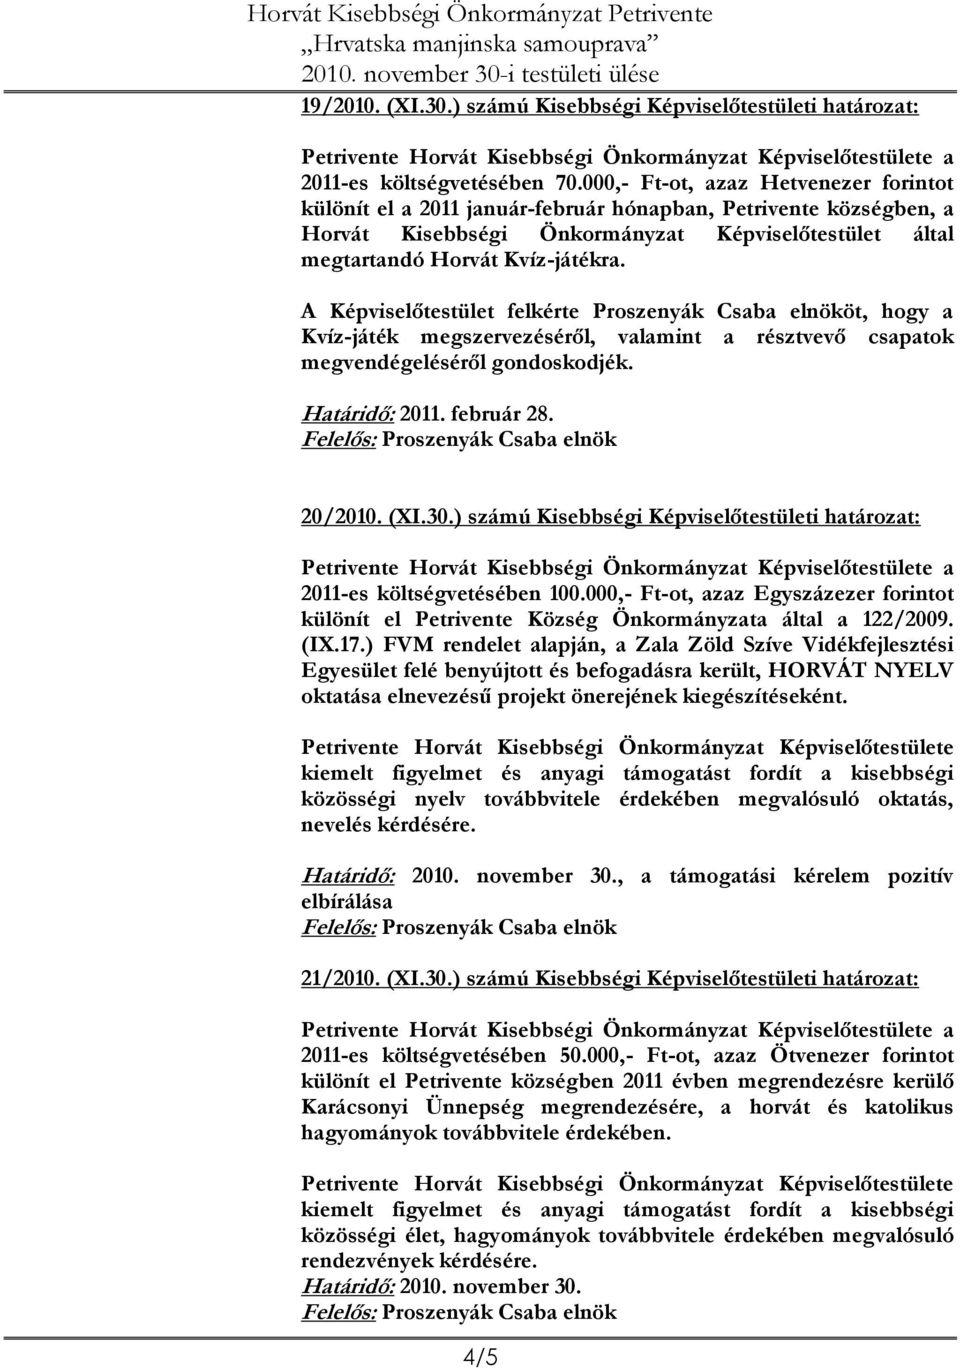 A Képviselőtestület felkérte Proszenyák Csaba elnököt, hogy a Kvíz-játék megszervezéséről, valamint a résztvevő csapatok megvendégeléséről gondoskodjék. Határidő: 2011. február 28. 20/2010. (XI.30.